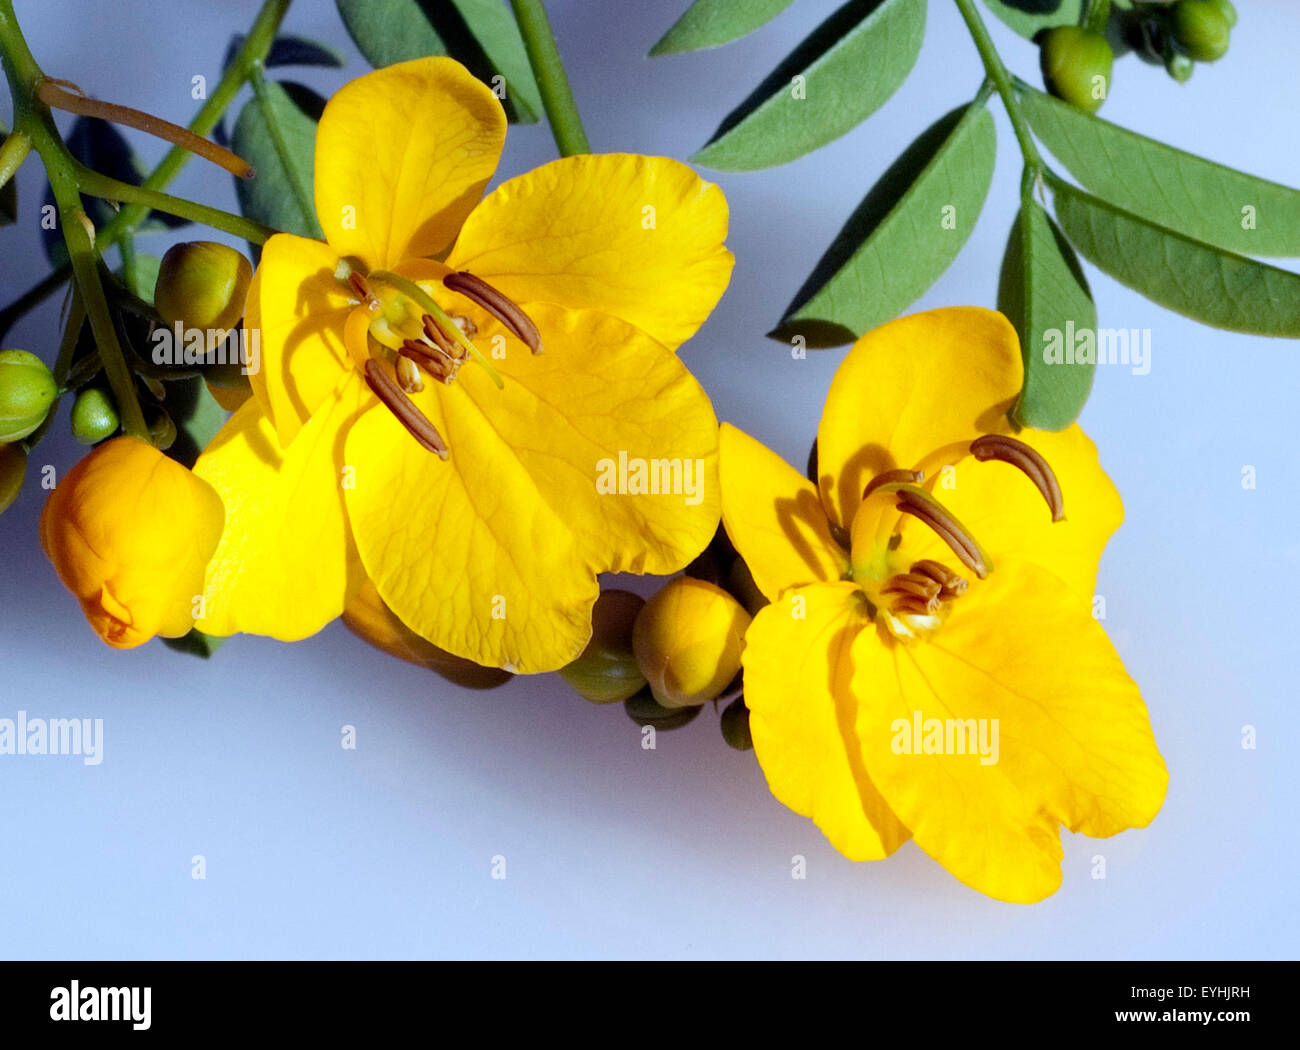 Chinesische Senna, Cassia senna, Stock Photo